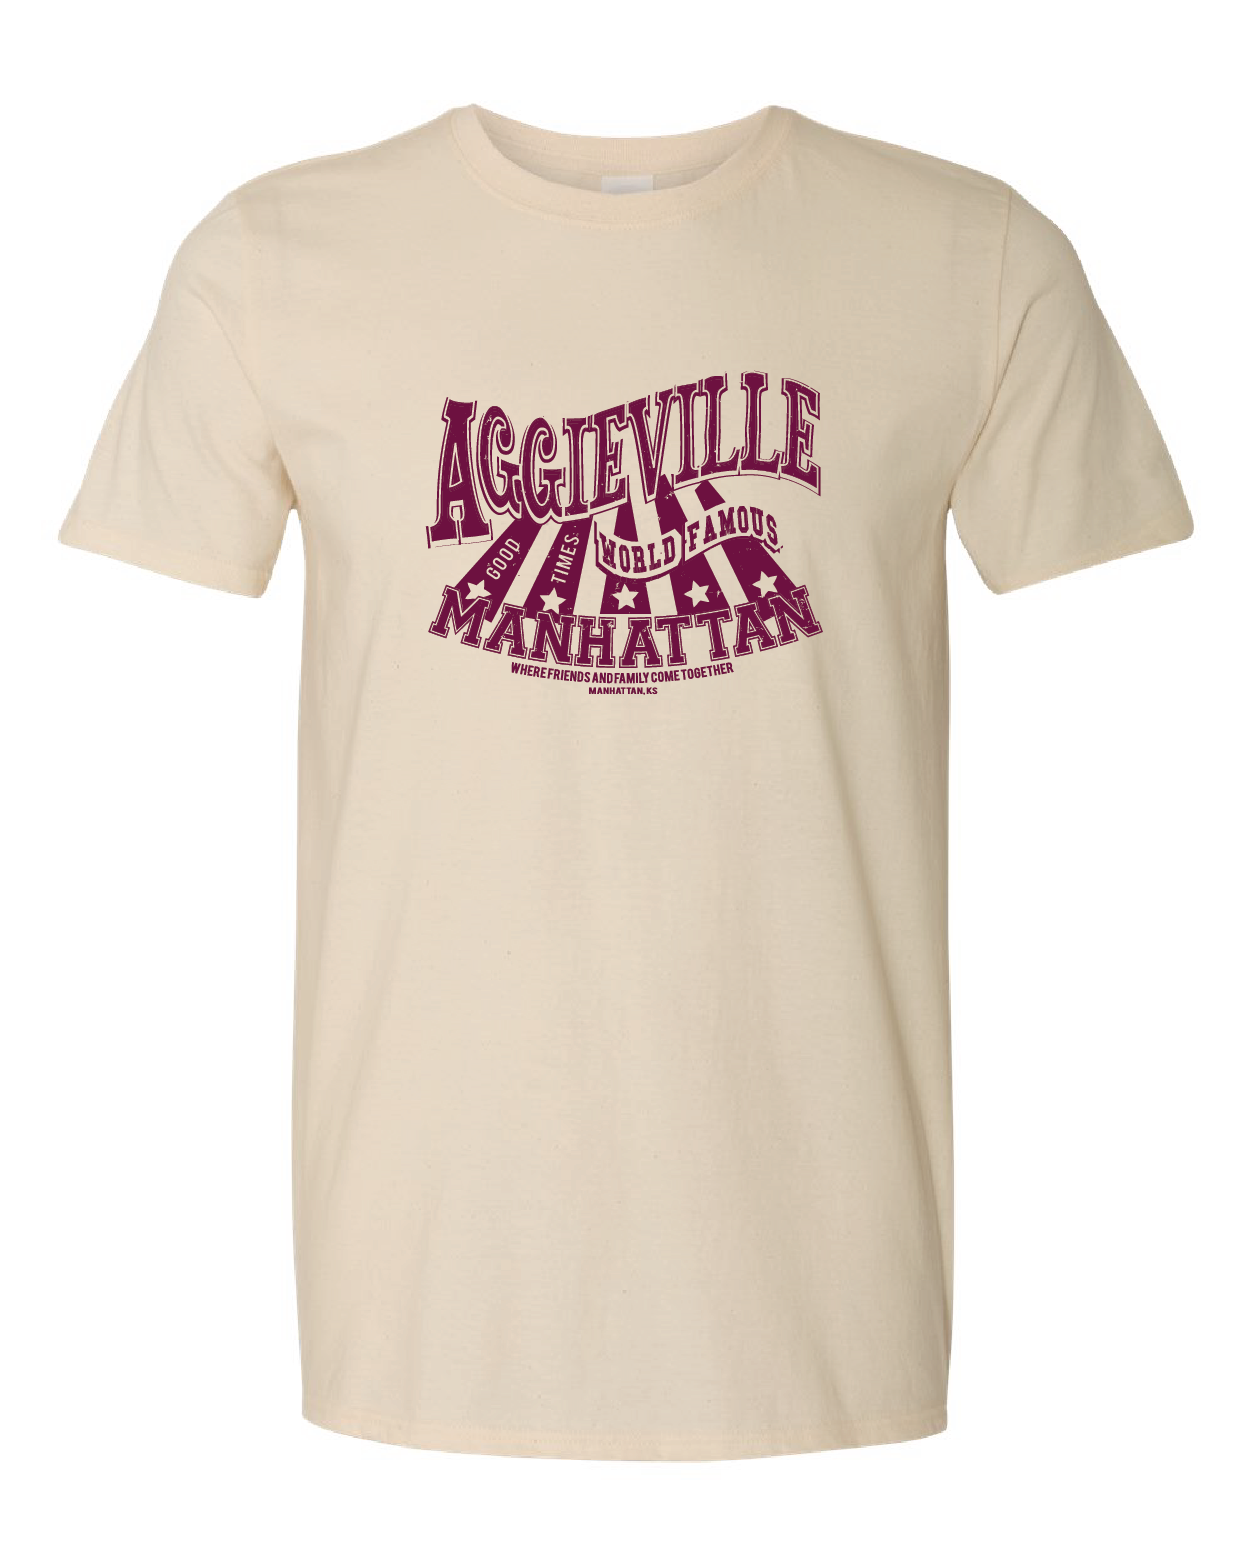 Aggieville, World Famous